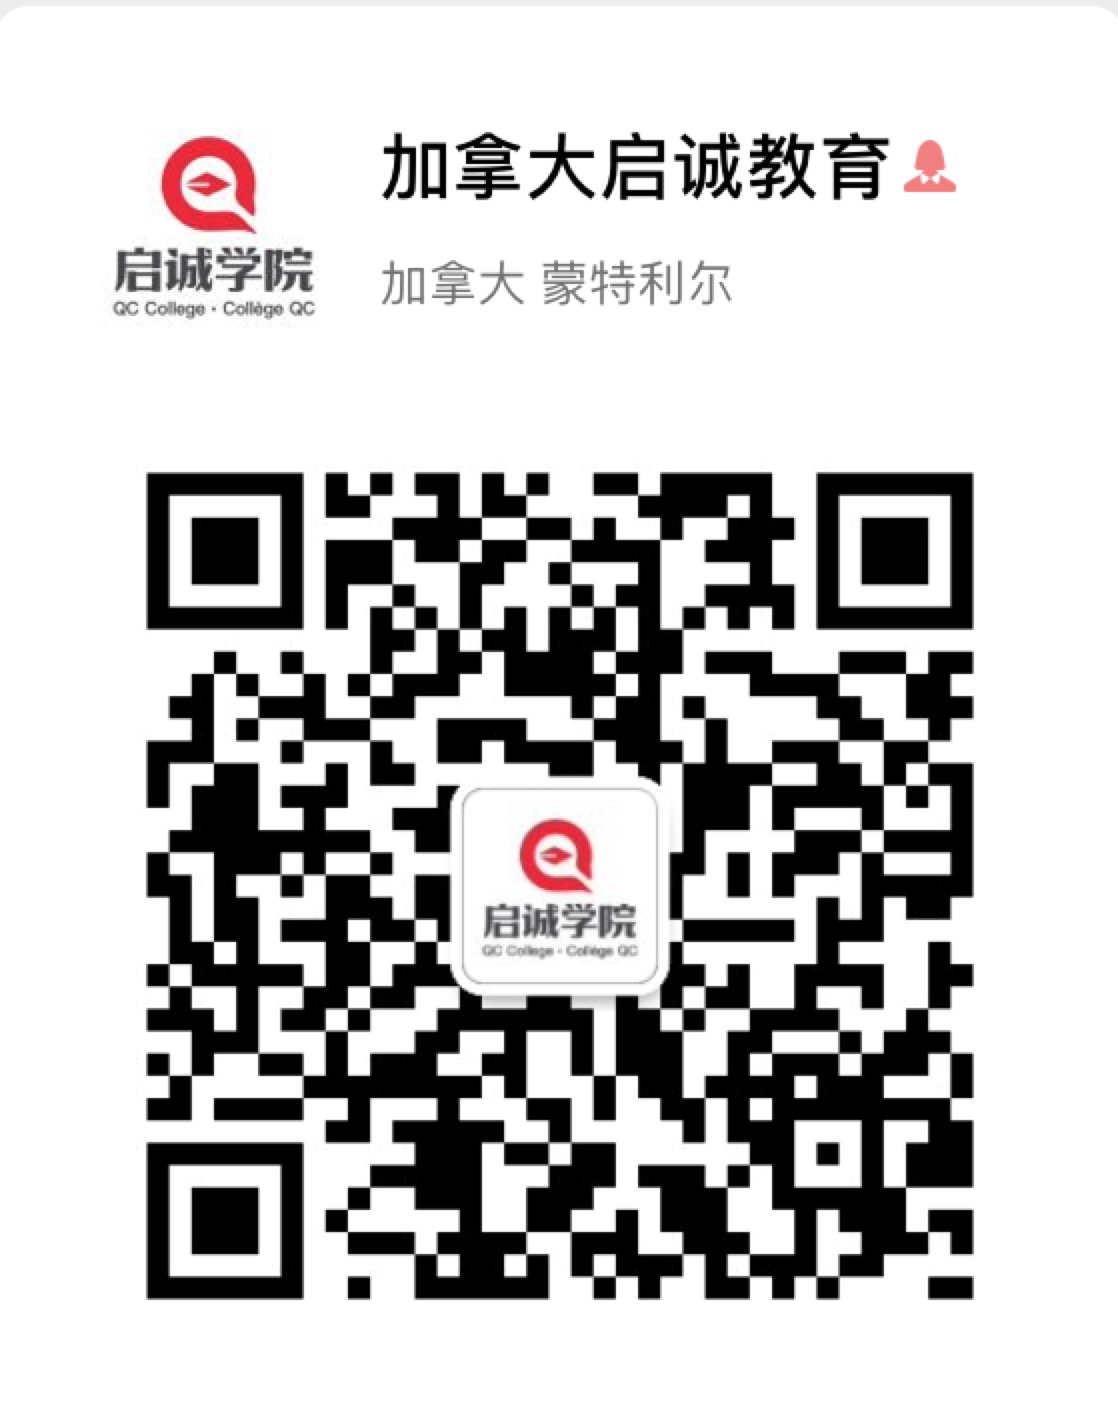 WeChat Image_20190917142945.jpg